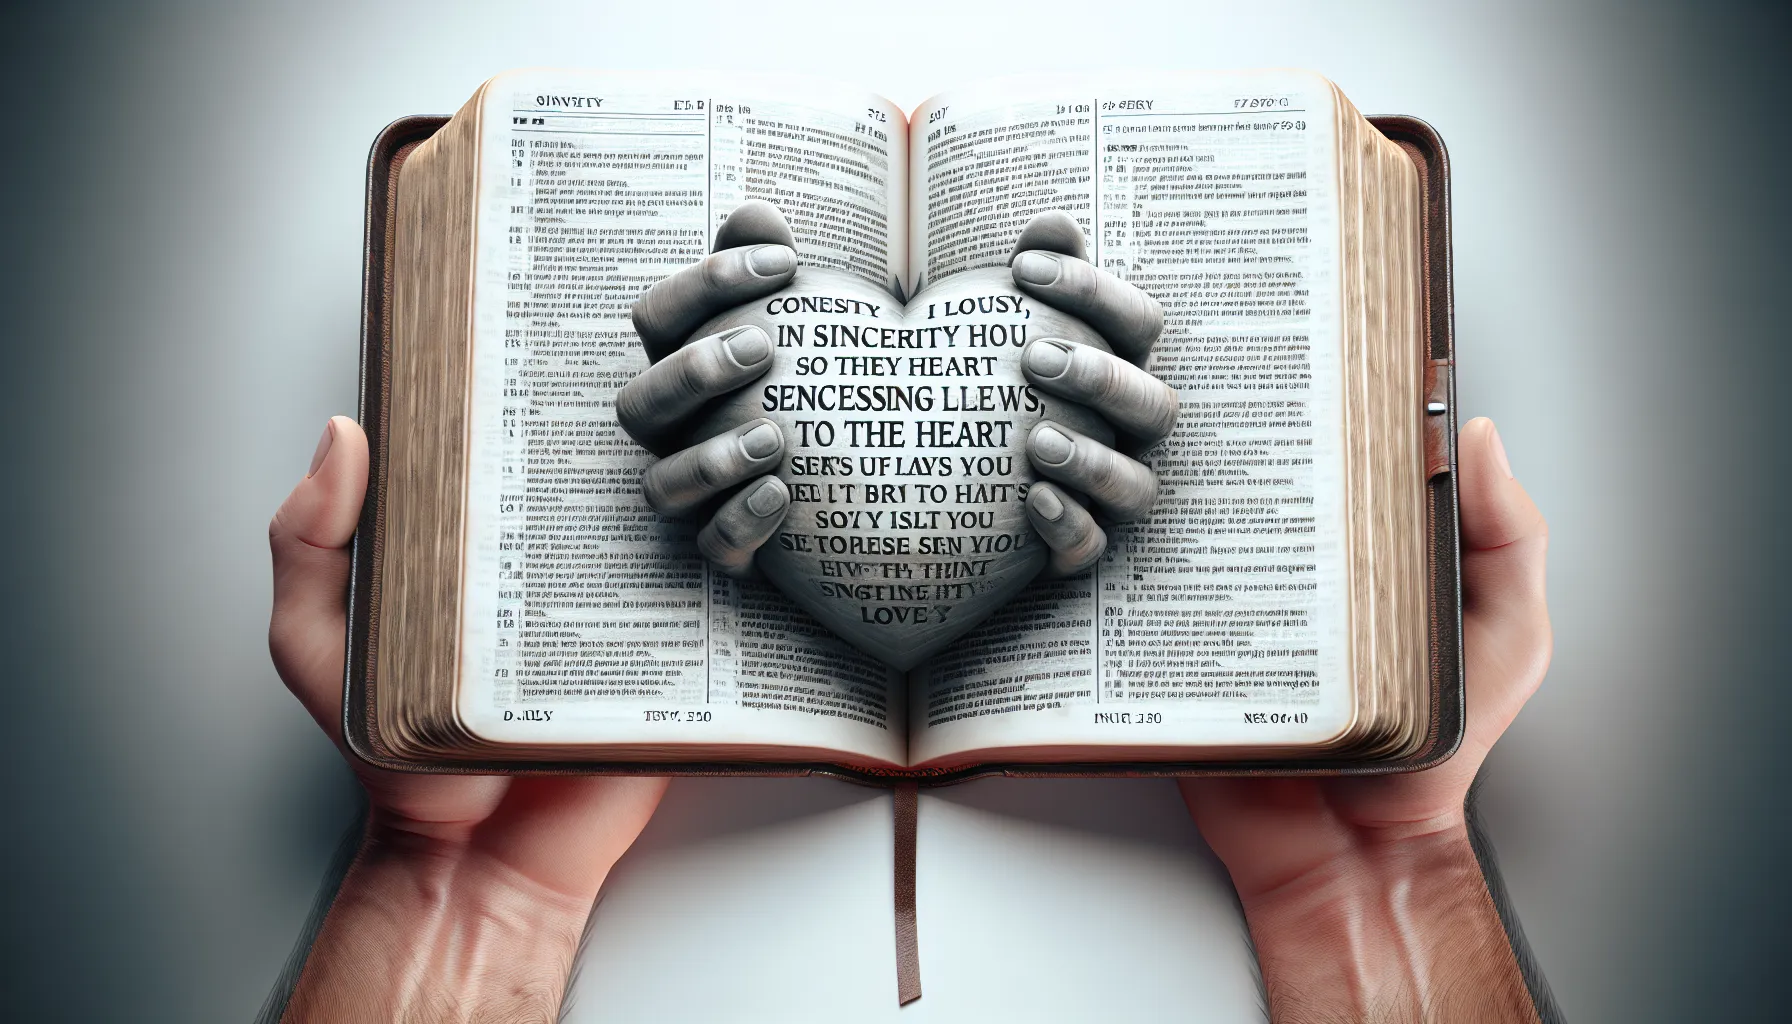 Imagen de una Biblia abierta donde se lee un pasaje relacionado con la sinceridad y la expresión de los sentimientos desde el corazón.